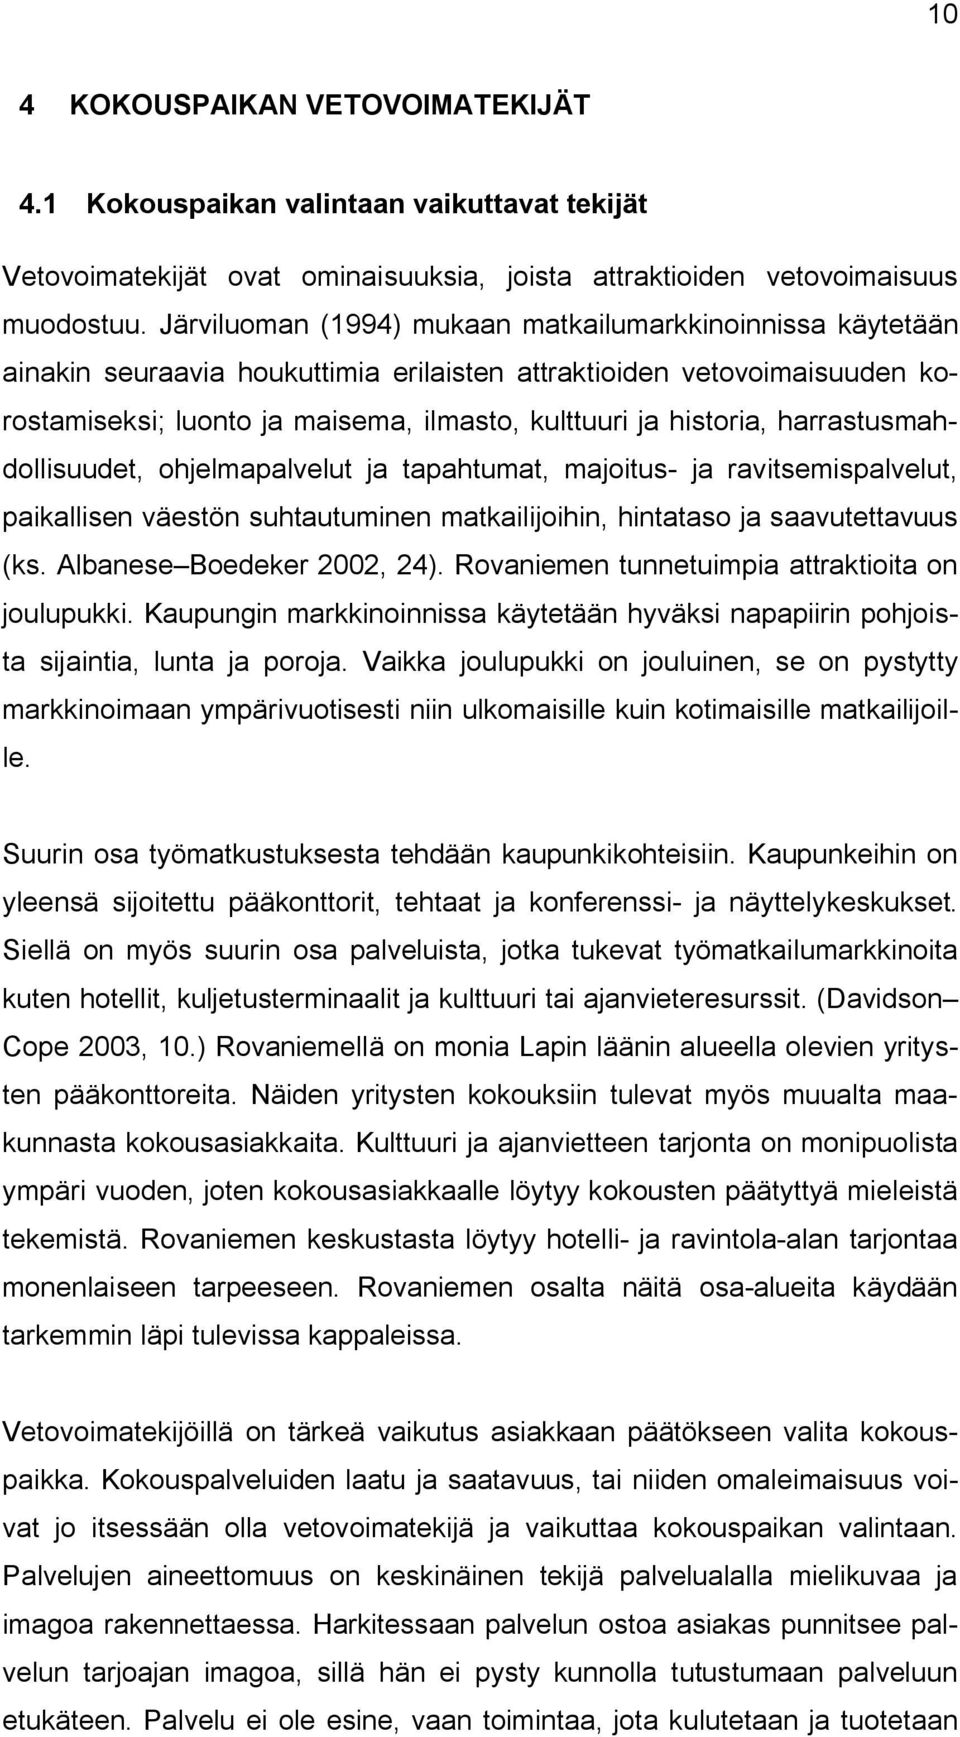 harrastusmahdollisuudet, ohjelmapalvelut ja tapahtumat, majoitus ja ravitsemispalvelut, paikallisen väestön suhtautuminen matkailijoihin, hintataso ja saavutettavuus (ks. Albanese Boedeker 2002, 24).